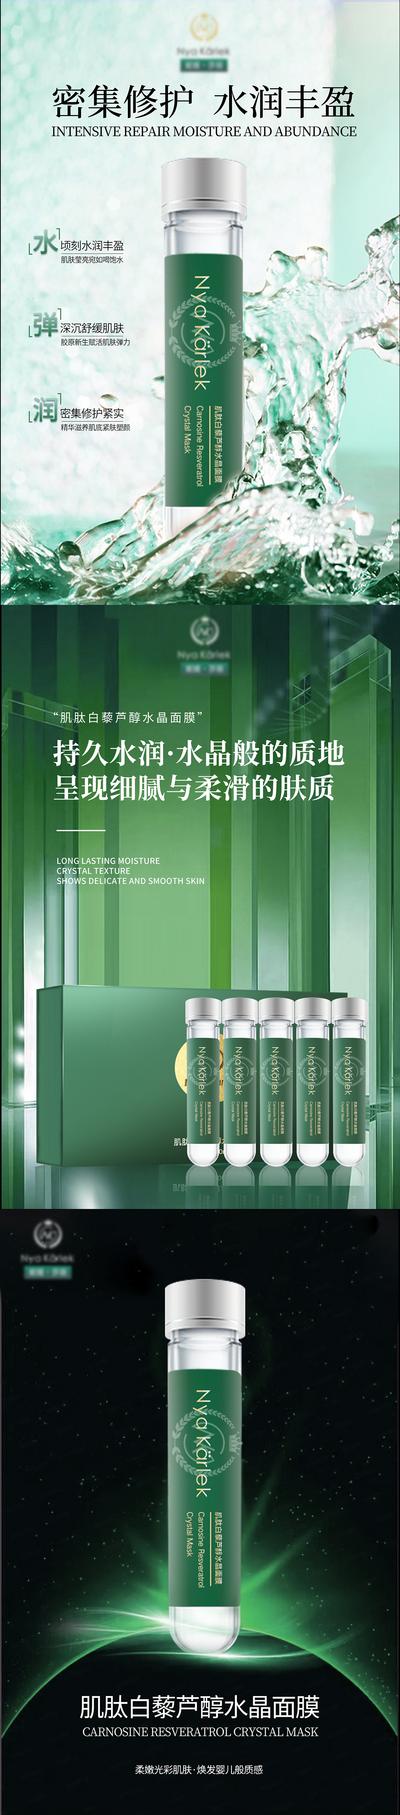 南门网 海报 医美 产品 护肤品 化妆品 面膜 修护 补水 系列